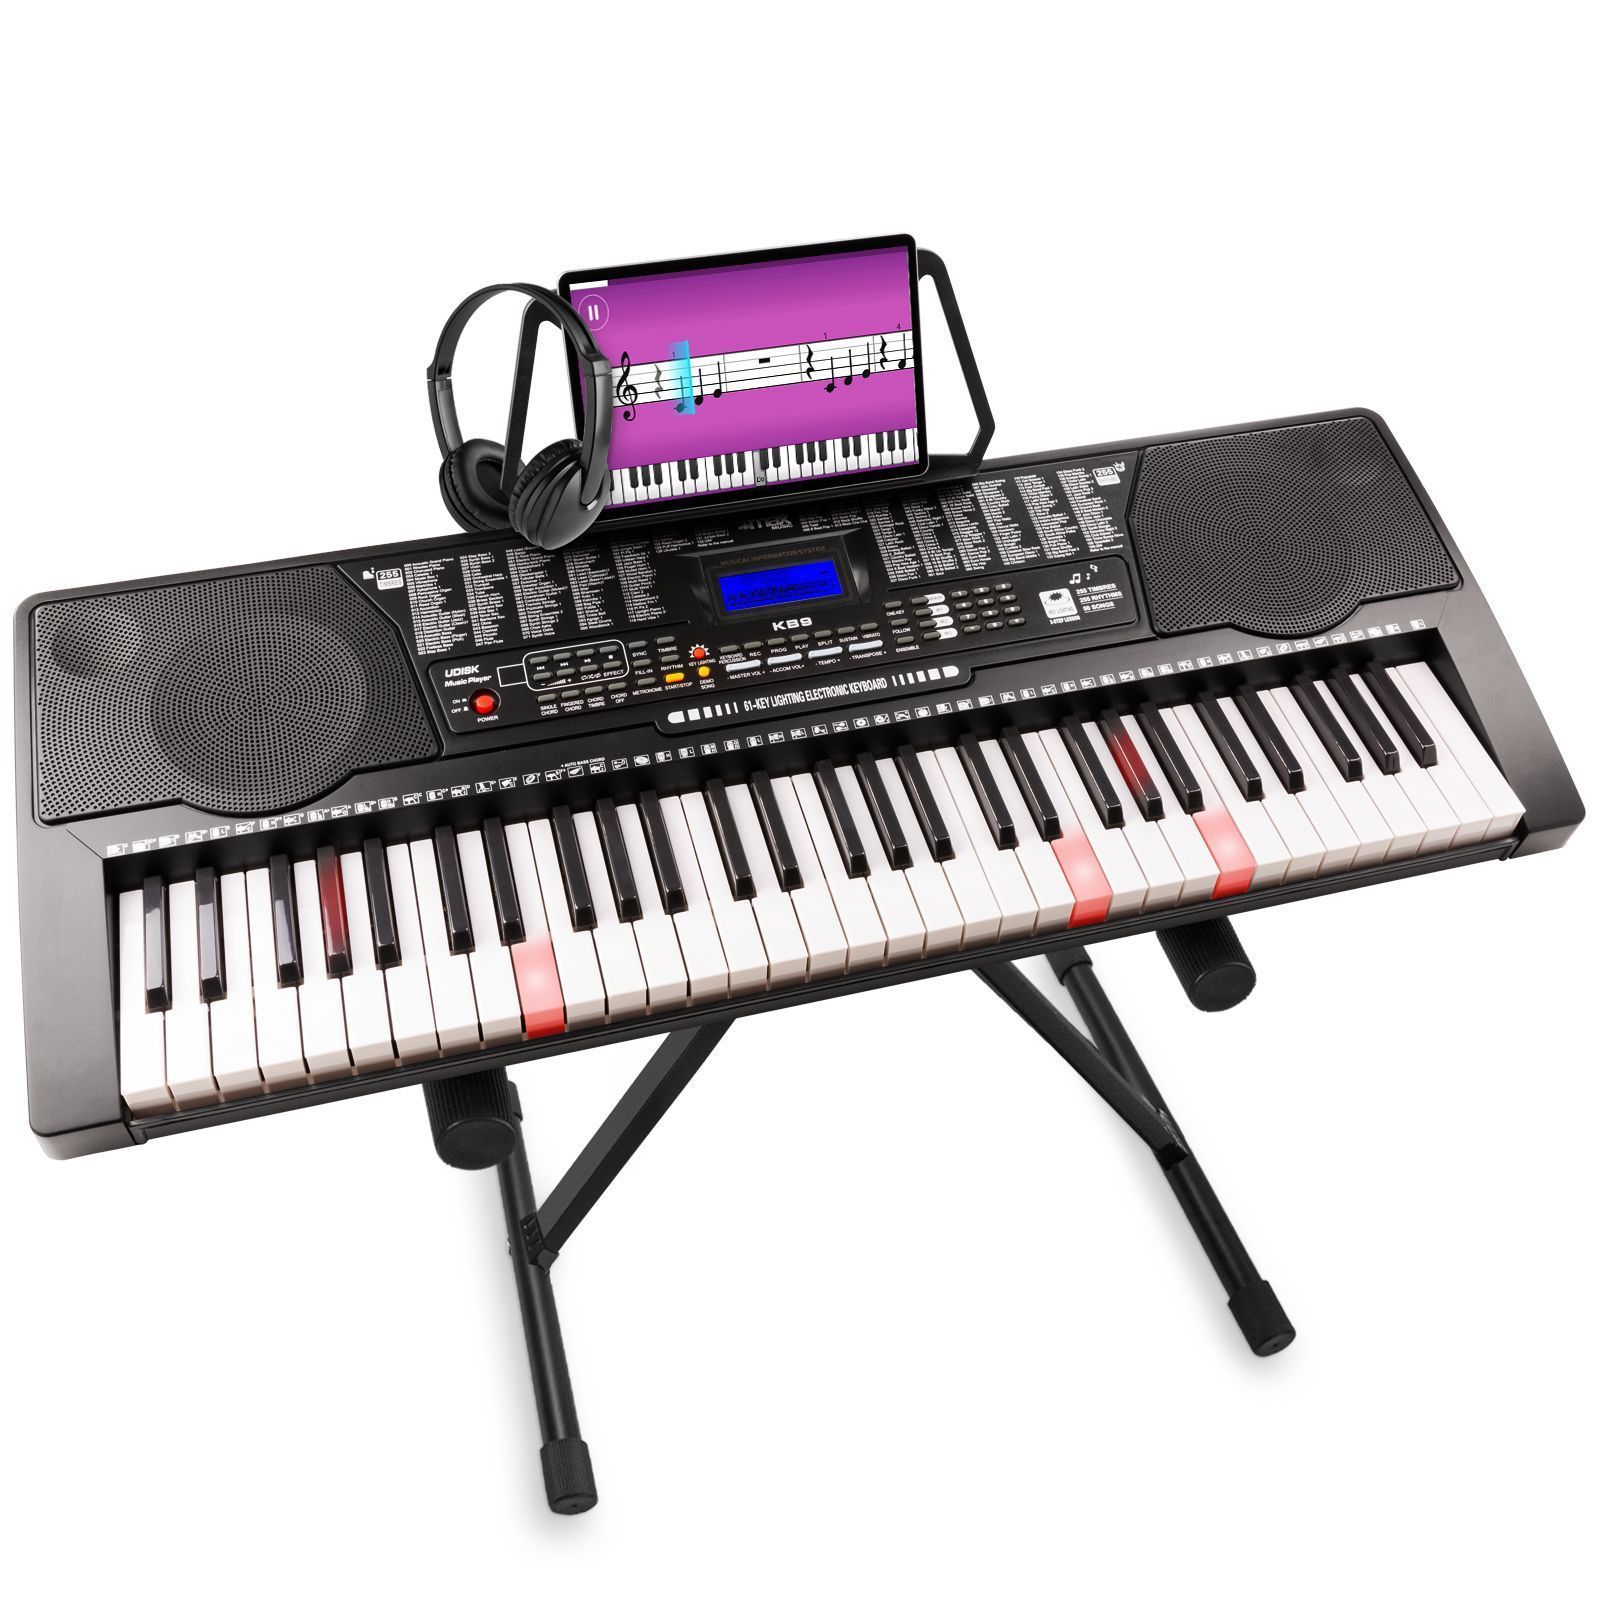 Schubert 255 Piano électrique USB clavier 61 touches lumineuses